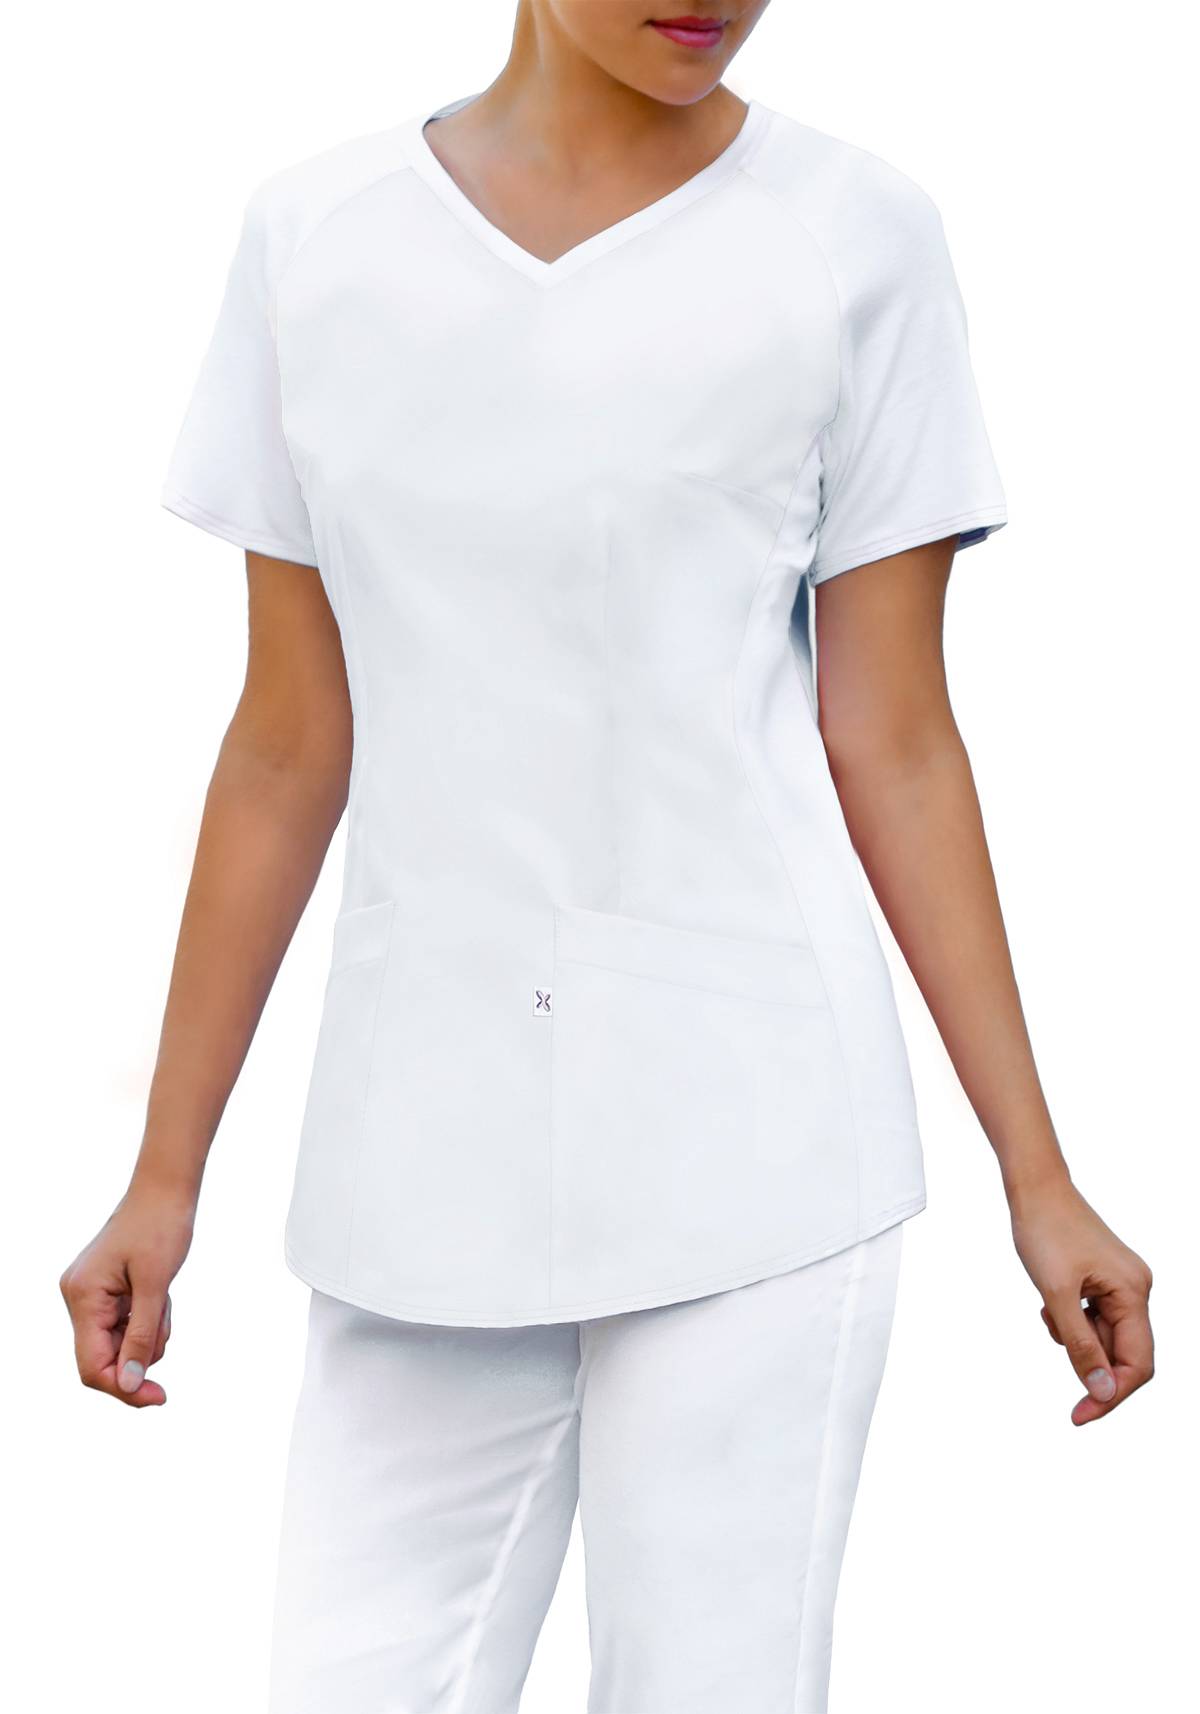 Bluza medyczna z wygodną, elastyczną dzianiną (kolor biały, BE2-B)